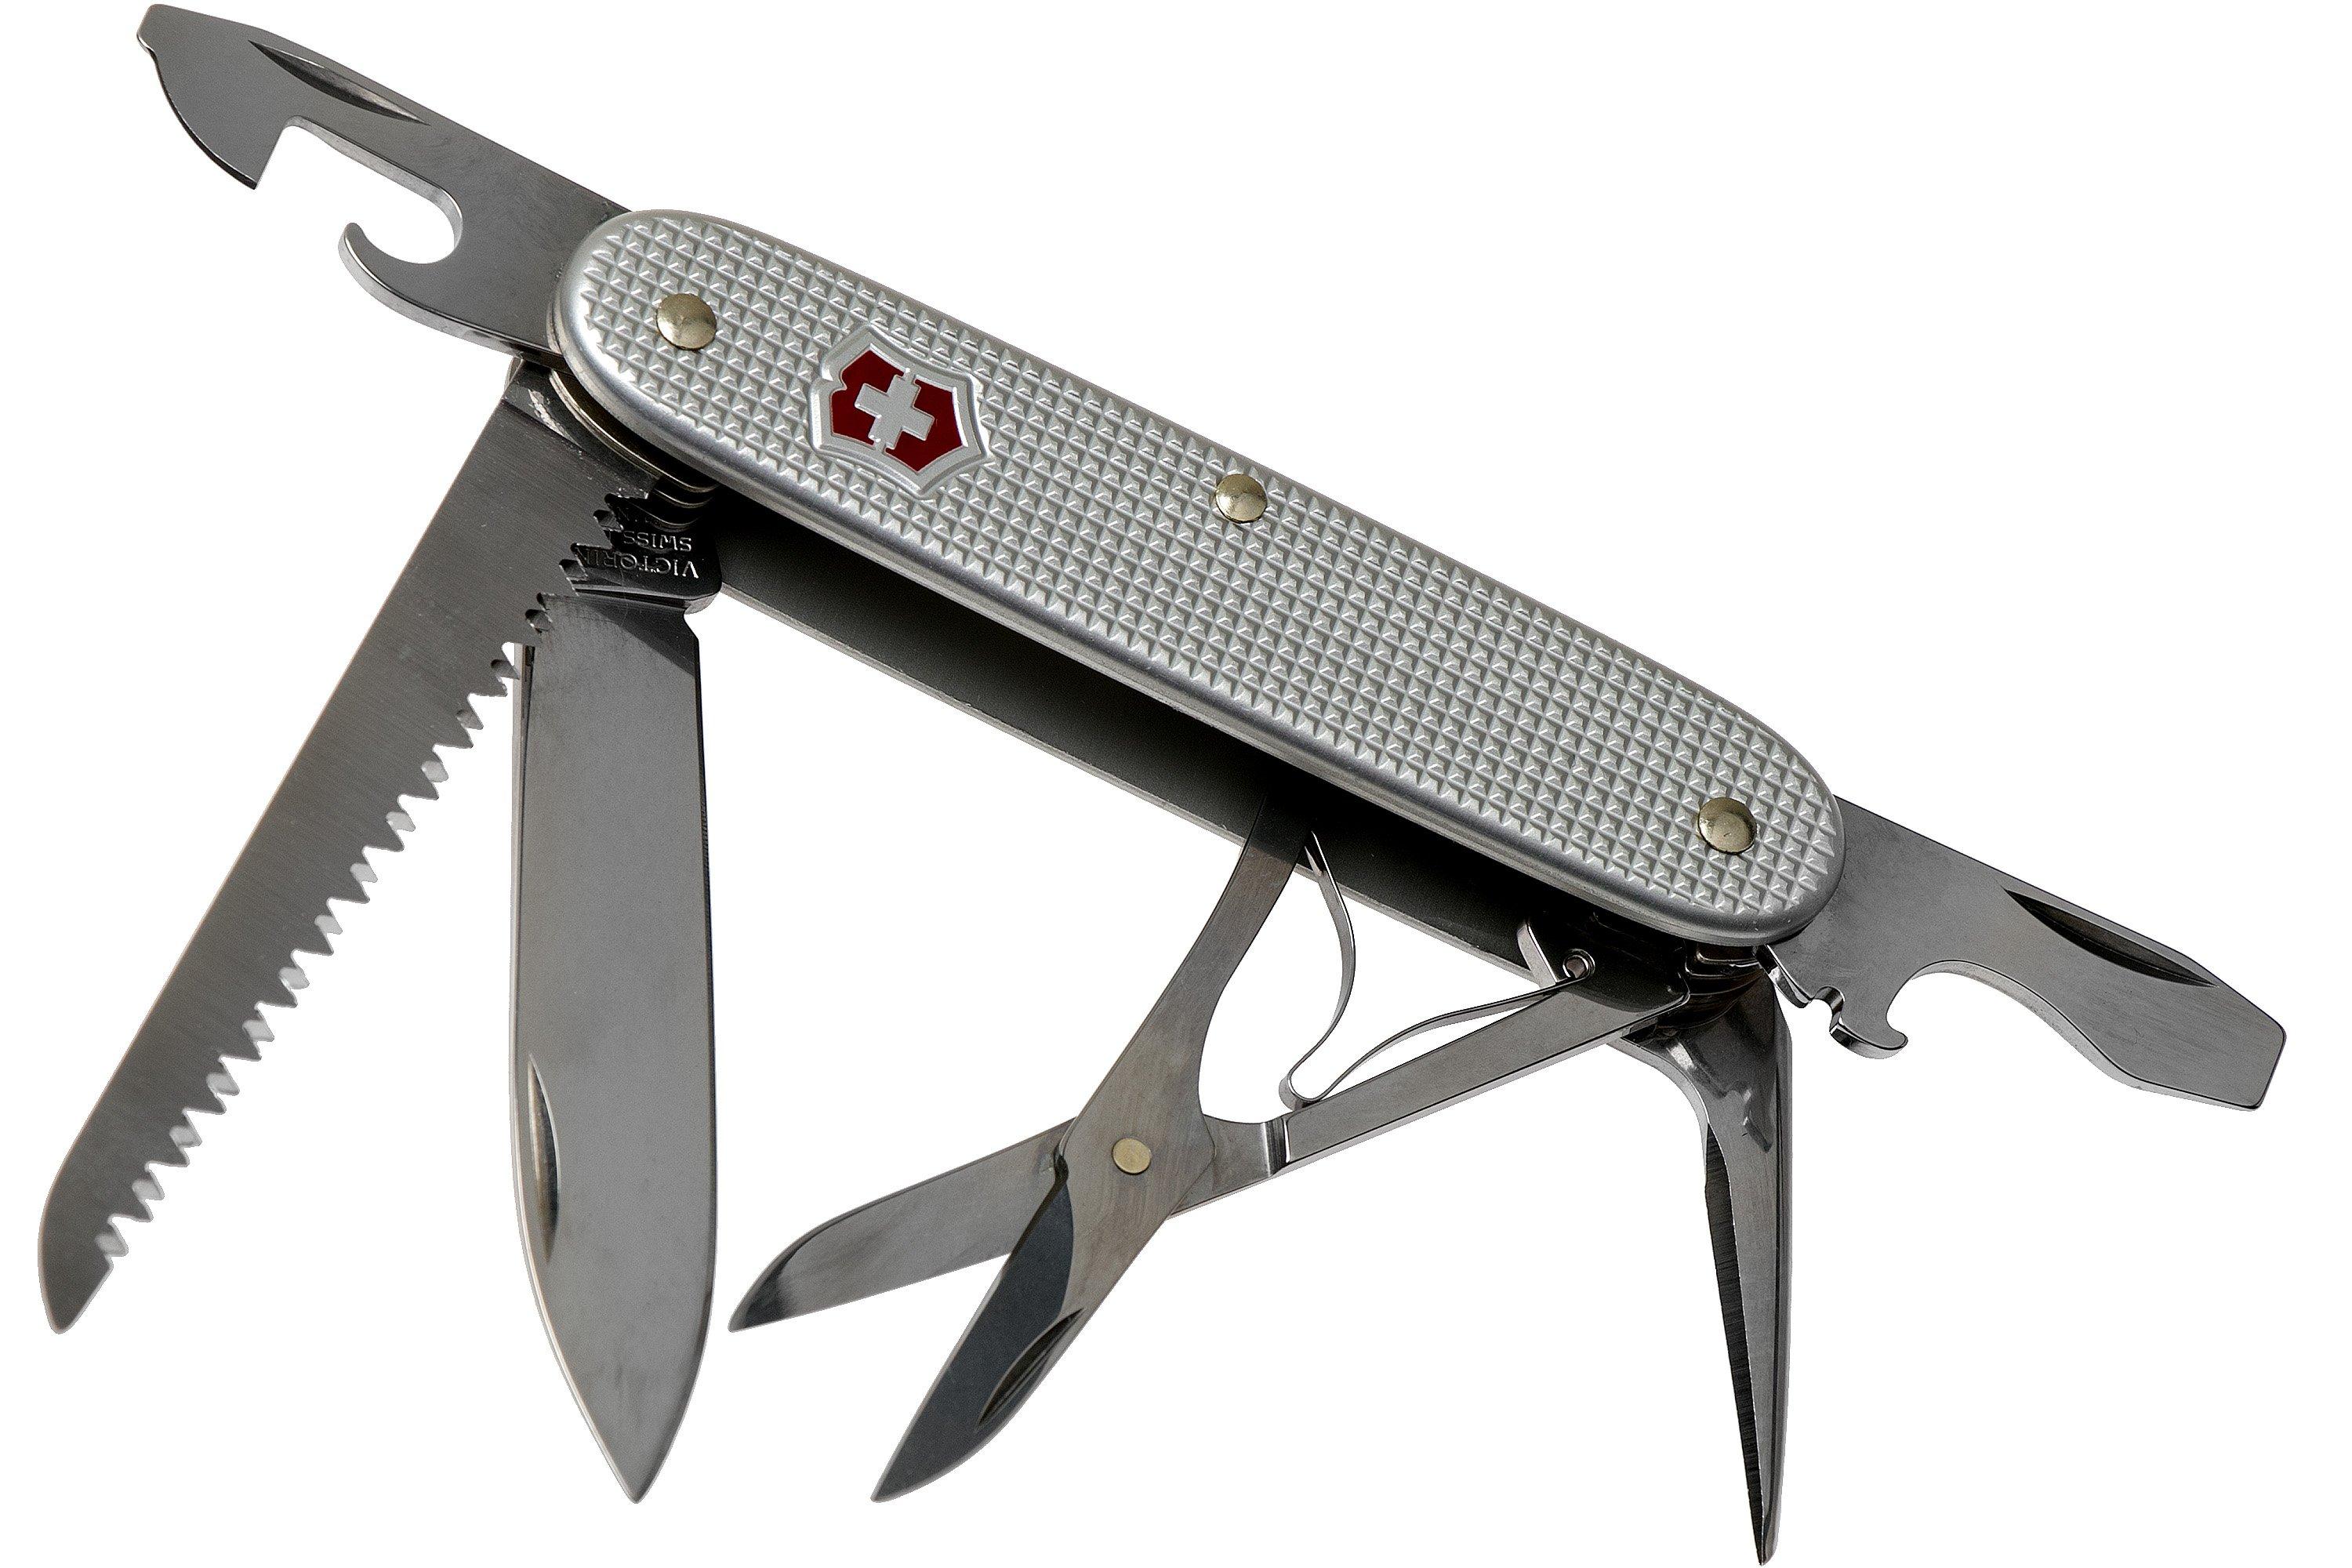  Victorinox Farmer Alox - Cuchillo suizo del ejército, cuchillo  de bolsillo multifunción de fabricación suiza con hoja grande,  destornillador, abrelatas y pelacables, 10 funciones : Todo lo demás